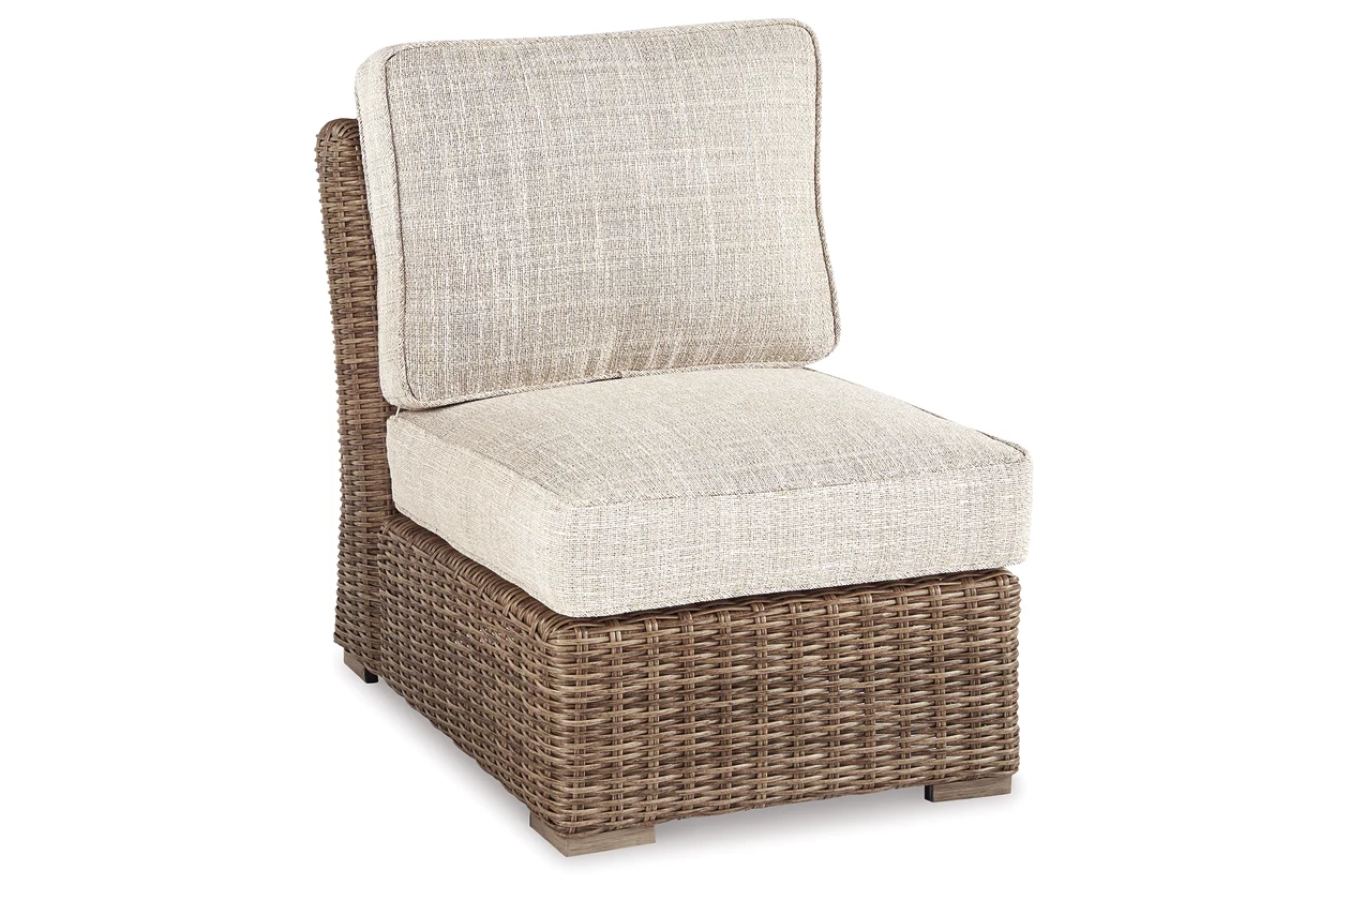 Beachcroft Armless Chair